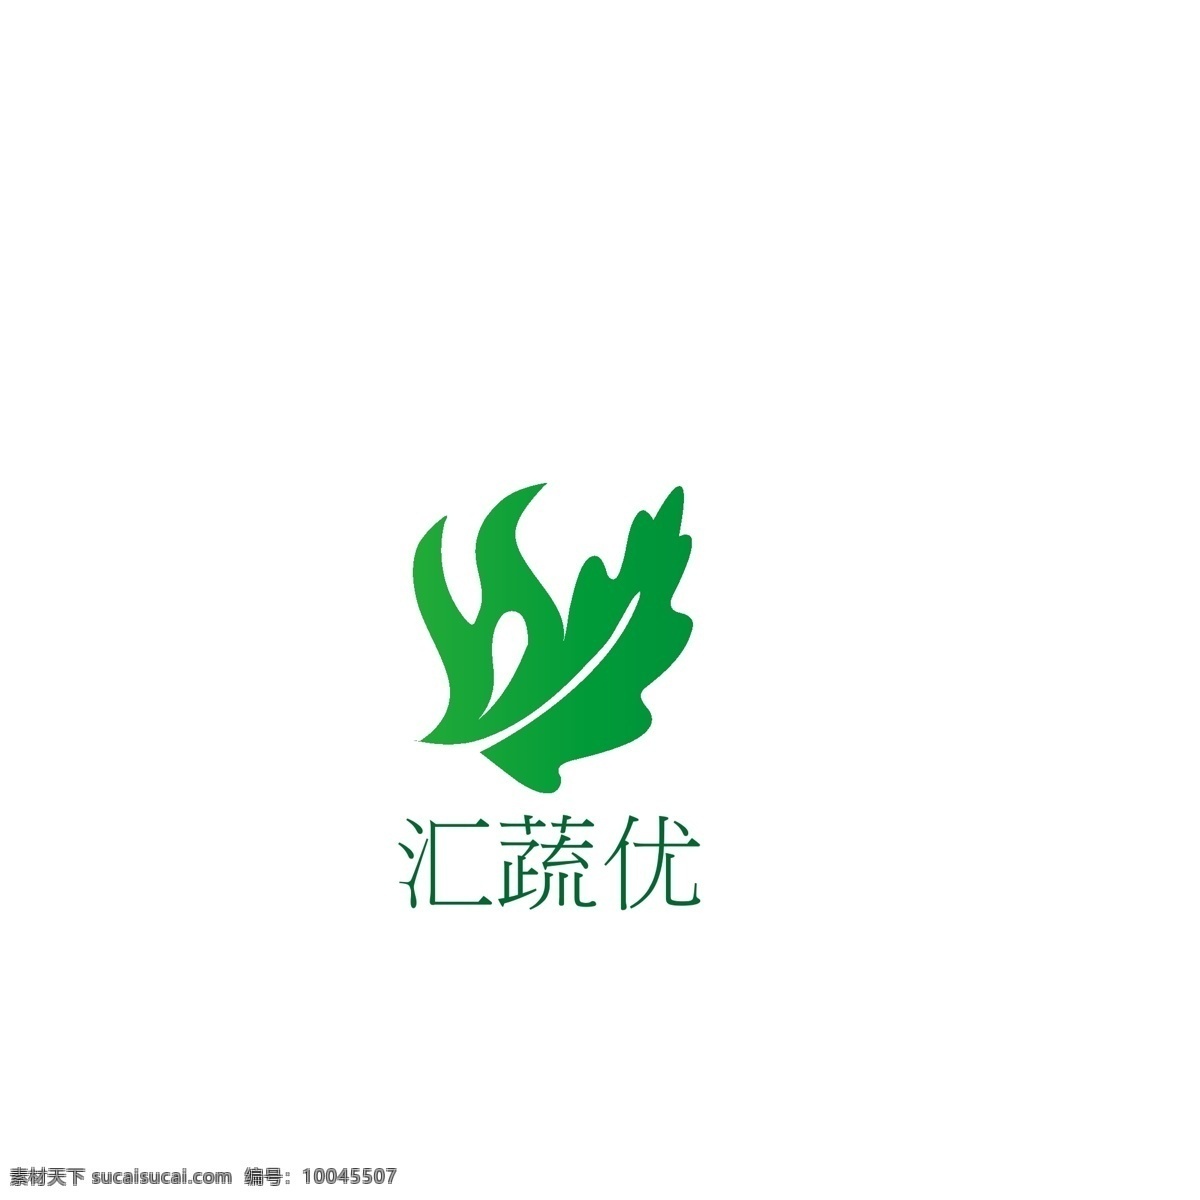 蔬菜logo 蔬菜 logo 颜色 环保 有机